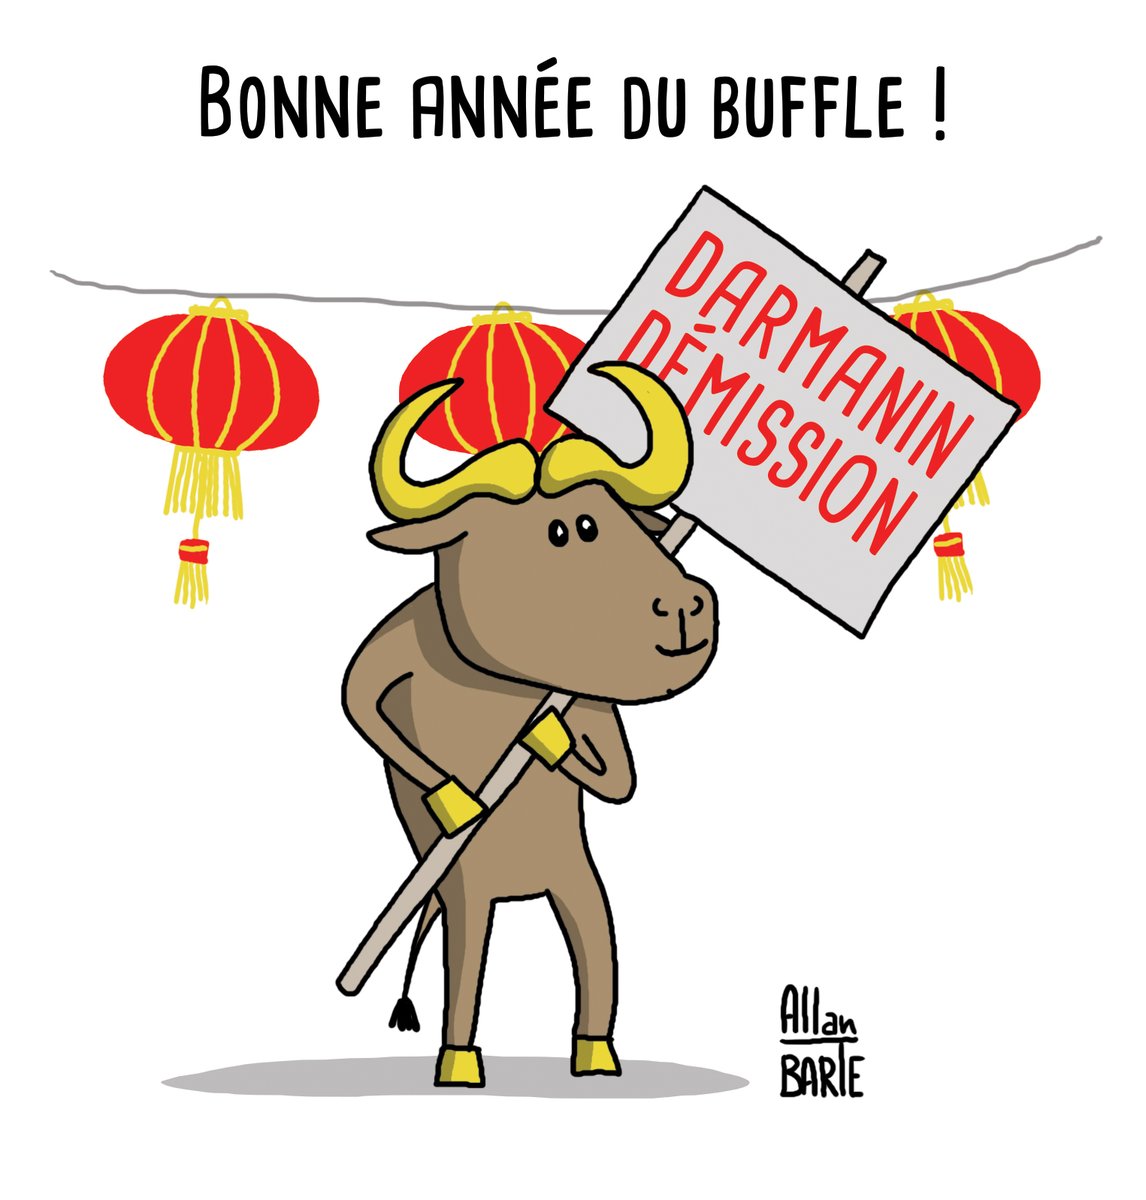 Bonne année du buffle, les amis ! 😊
#buffle #NouvelAnChinois #NouvelAnLunaire #DarmaninDemission